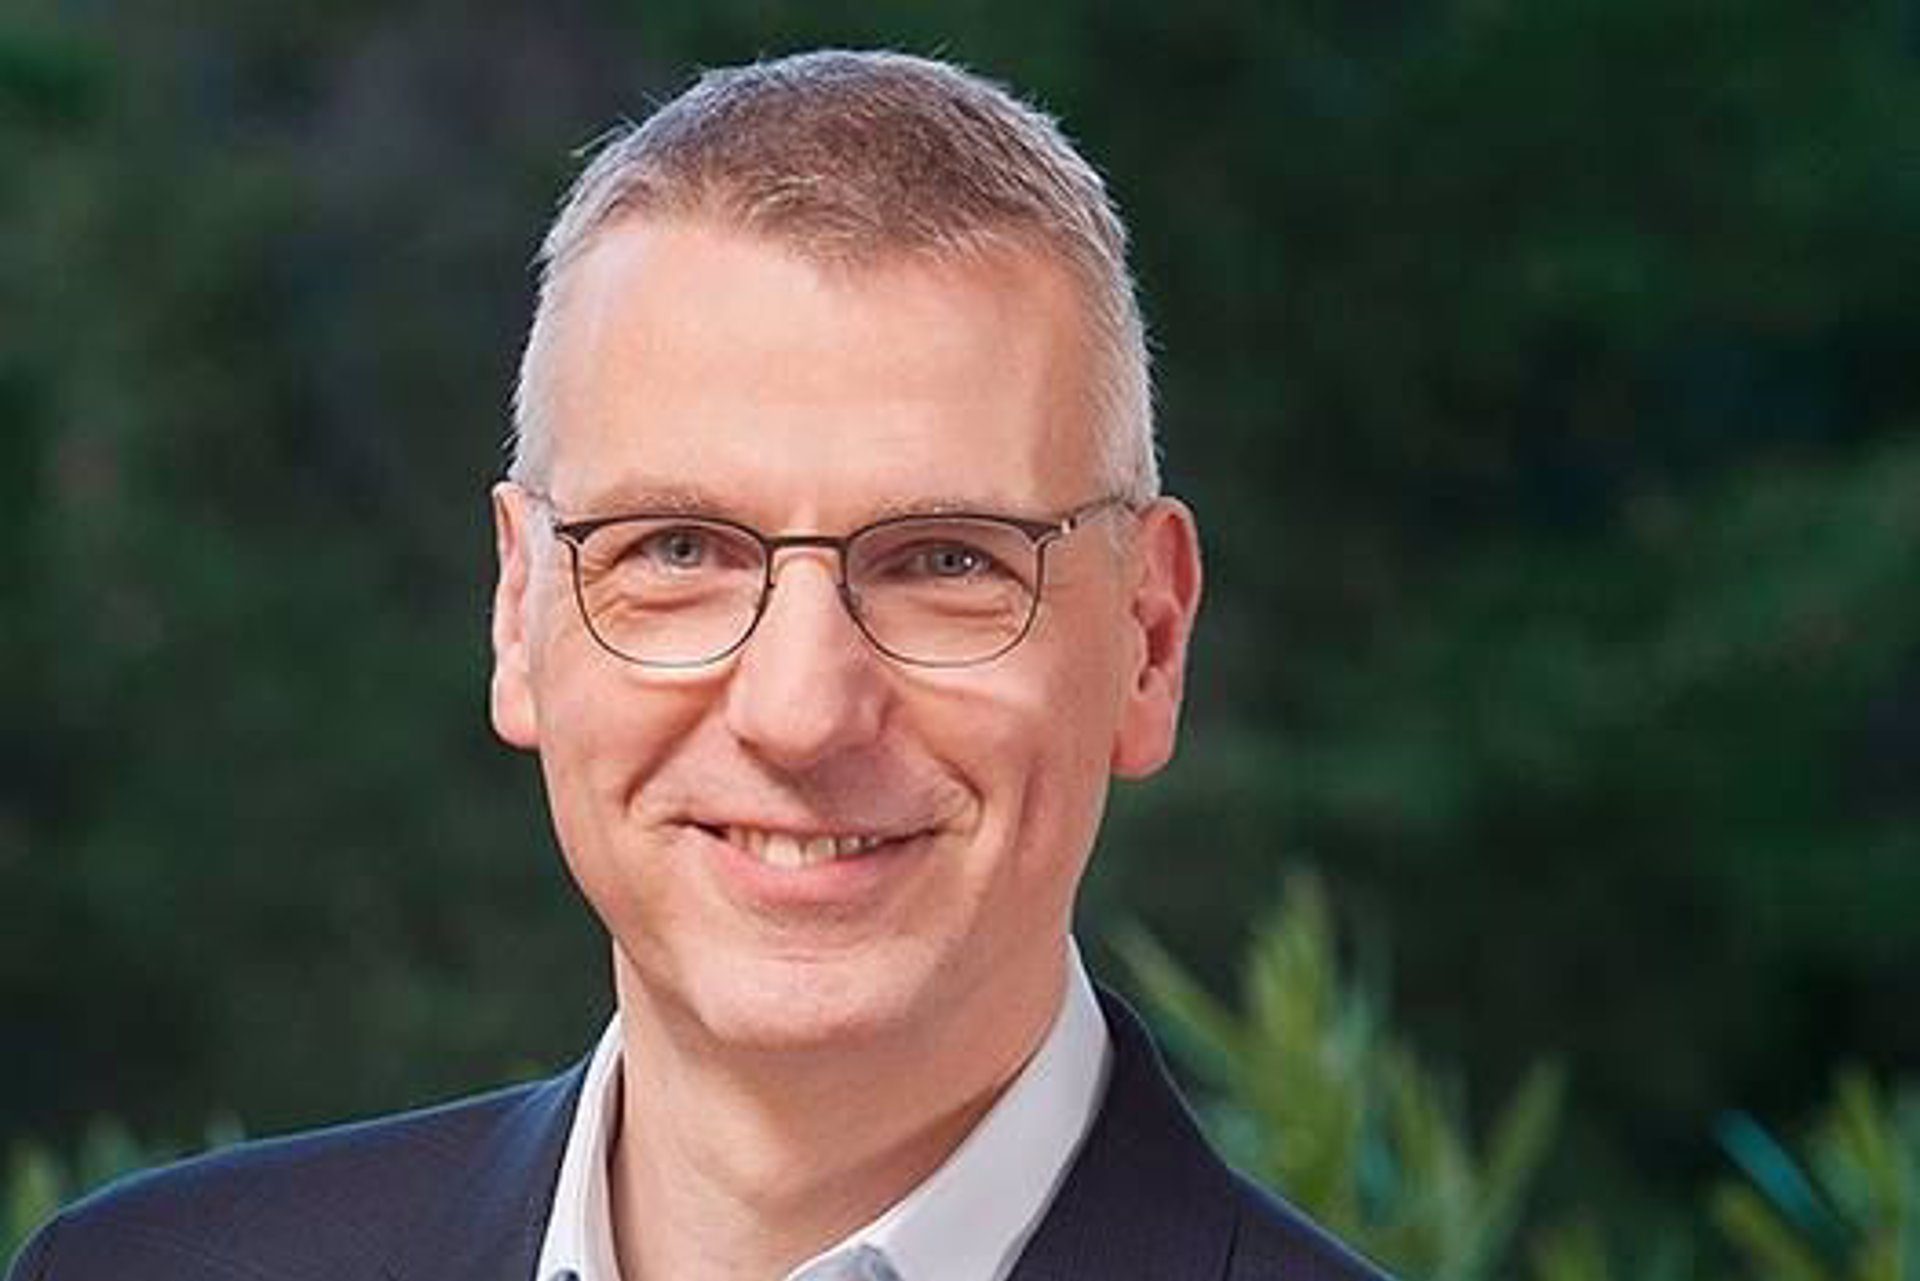 Siemens Gamesa cesa a Andreas Nauen como consejero delegado, al que relevará Jochen Eickholt